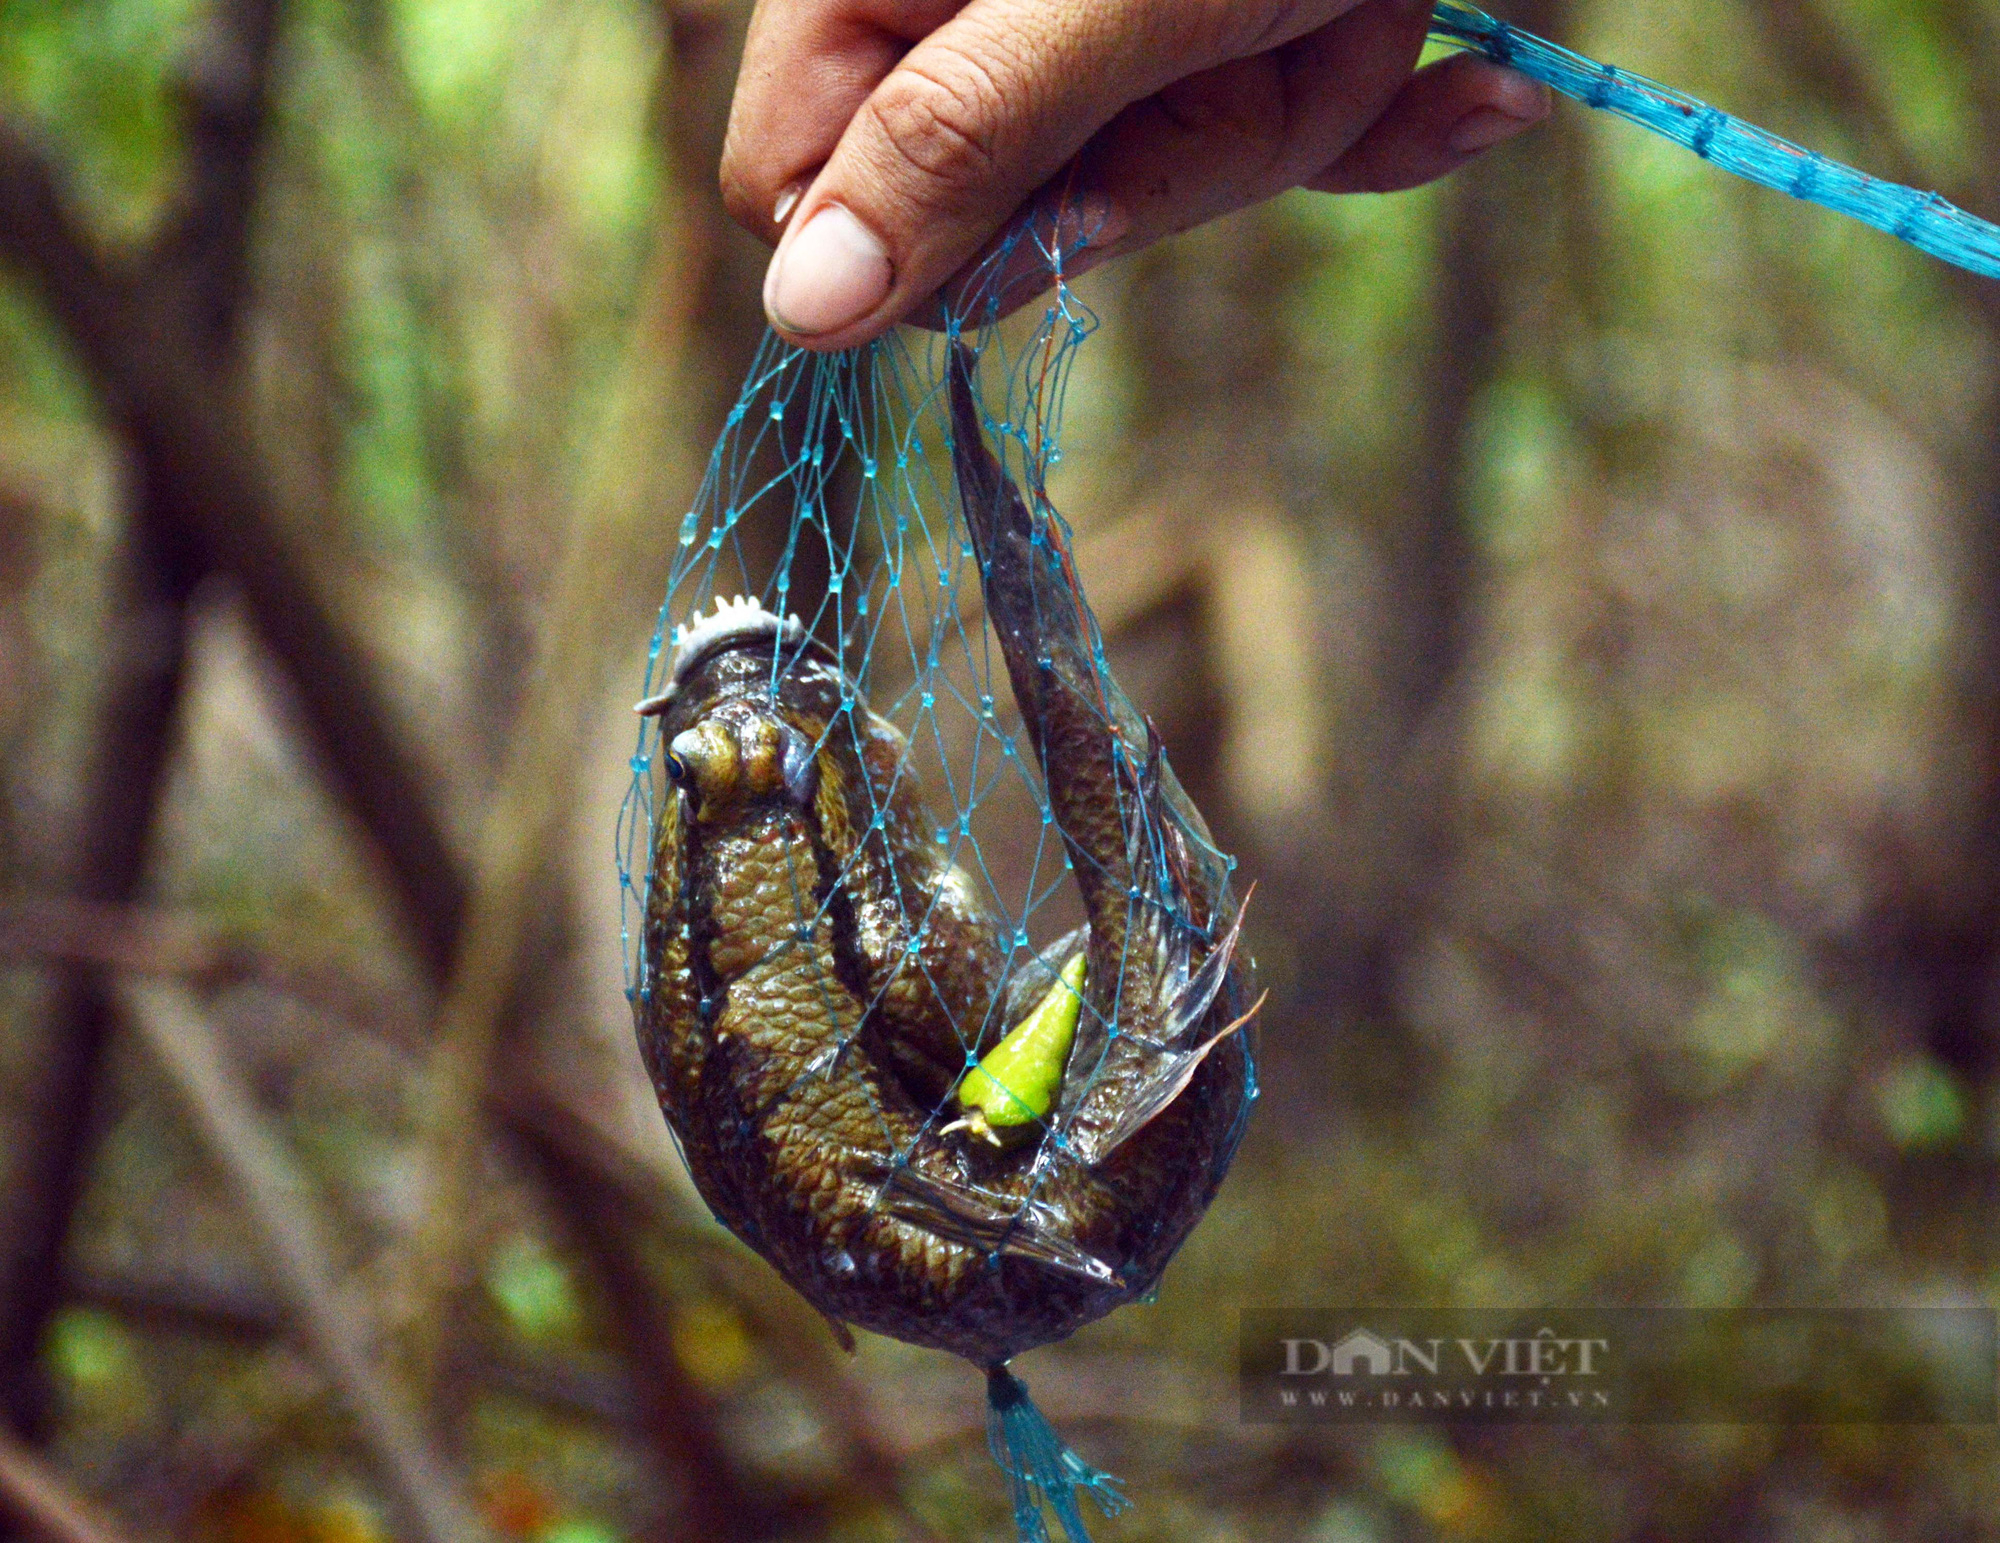 Điểm danh những loài thủy sản ngon – độc lạ sống dưới cánh rừng ngập mặn ở Cà Mau - Ảnh 5.